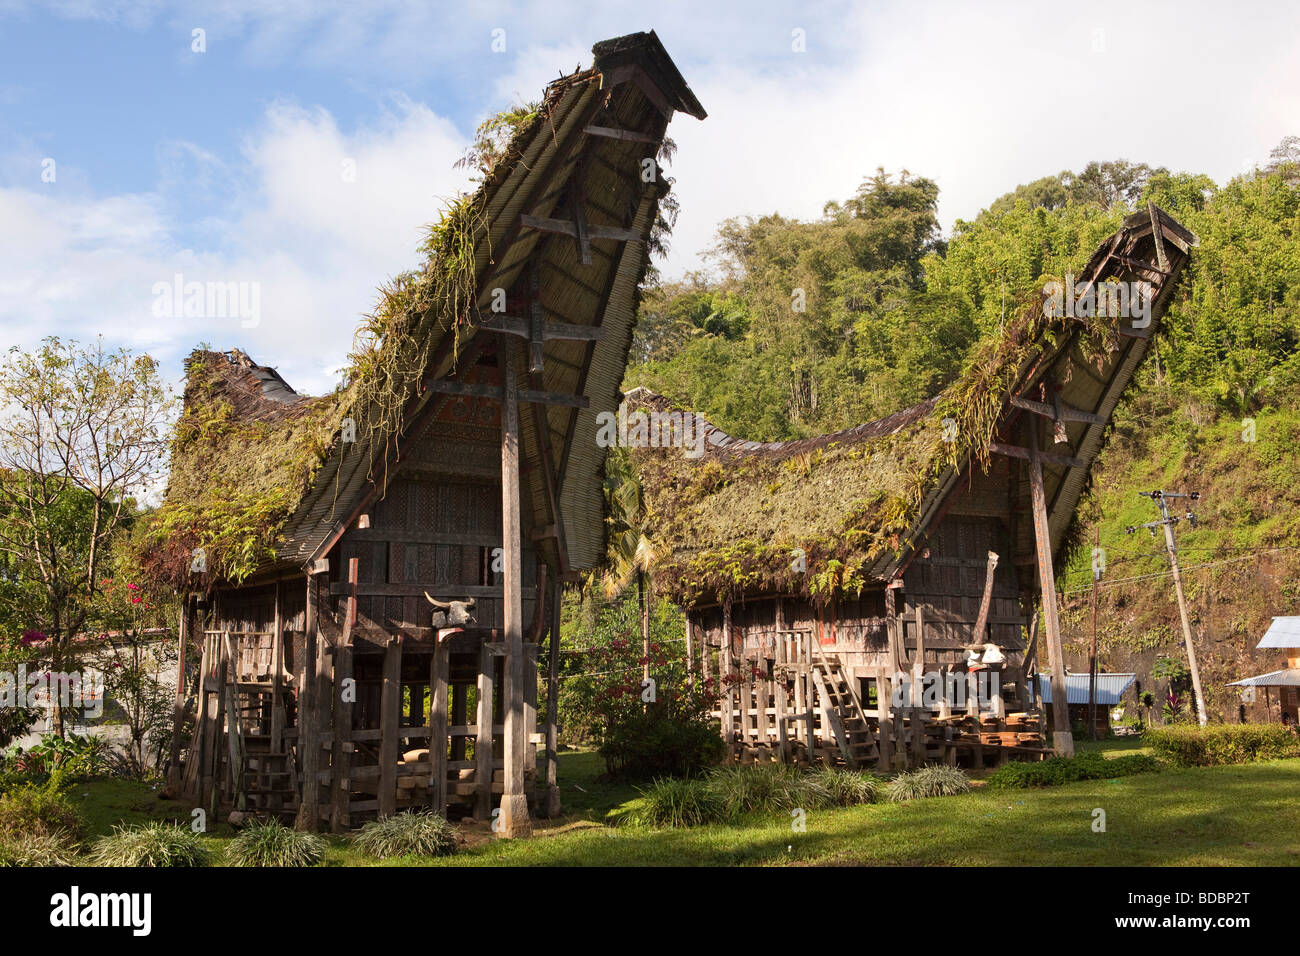 Indonesien Sulawesi Tana Toraja Lemo traditionelle Tongkonan Häuser mit alten verwilderten Strohdach Stockfoto